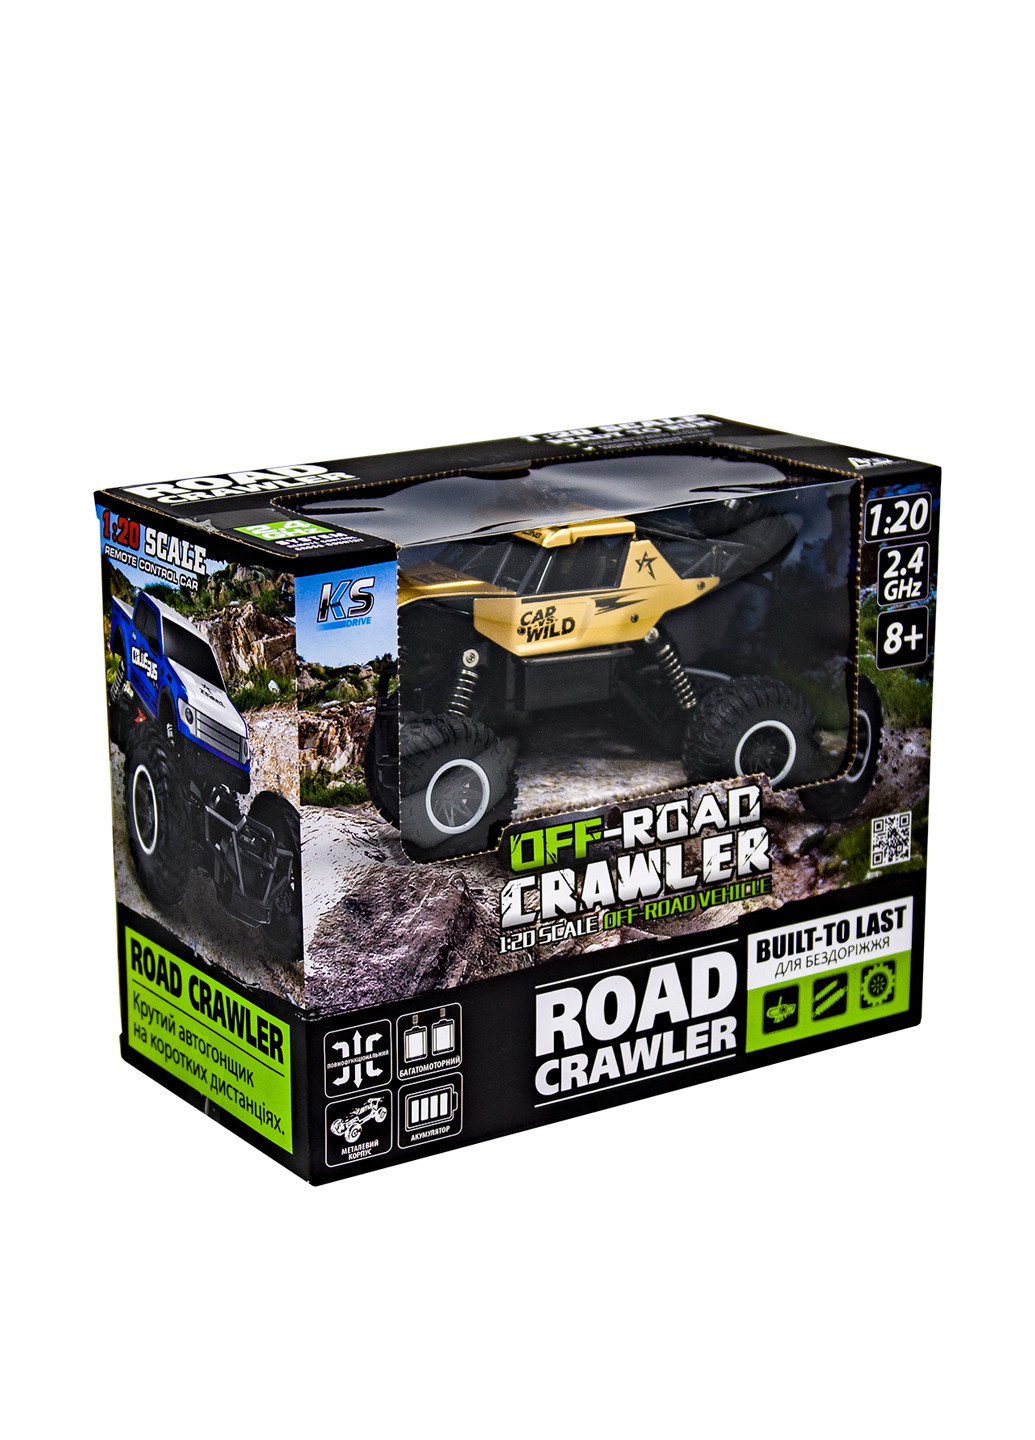 Автомобиль OFF-ROAD CRAWLER на р/у - CAR VS WILD 3,6V, 1:20 Sulong Toys (157723464)